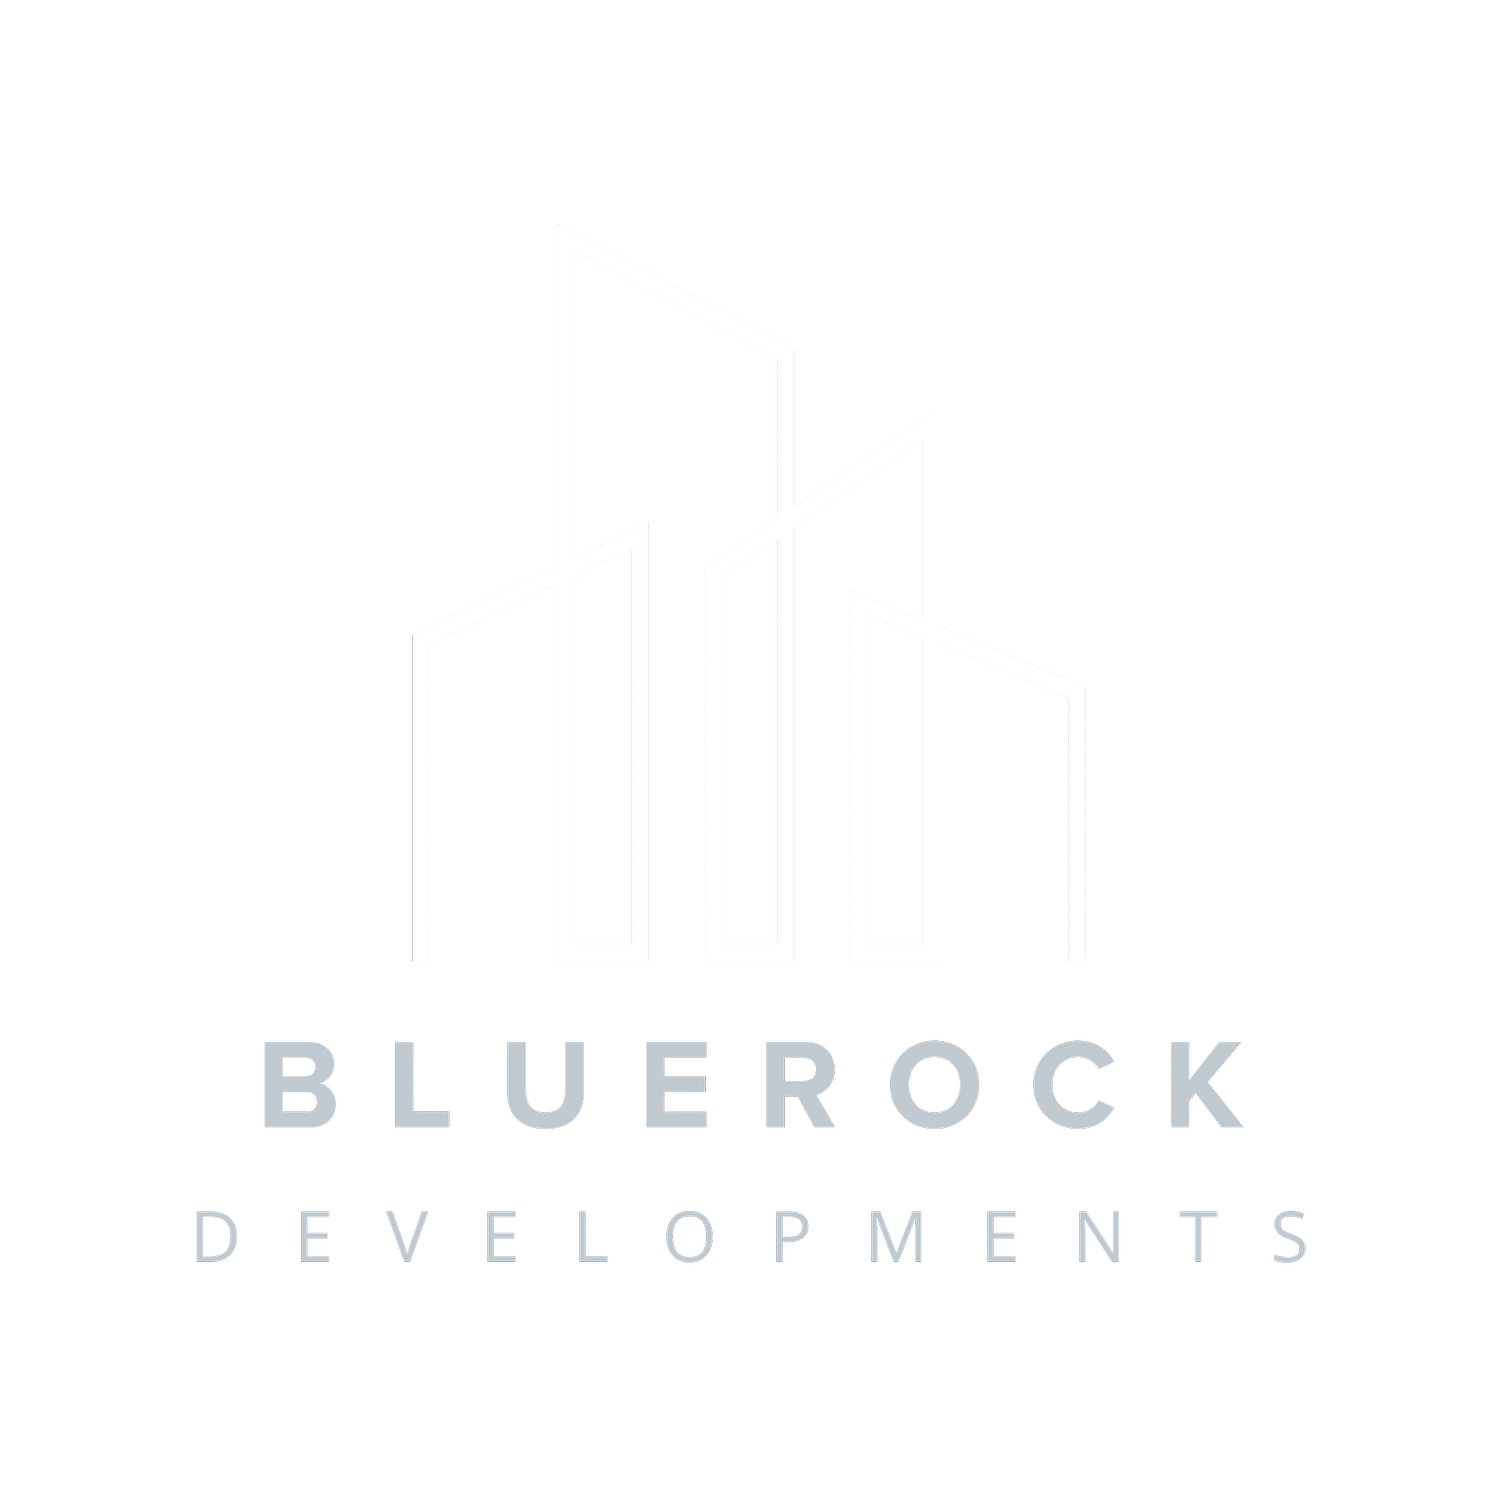 Bluerock Developments